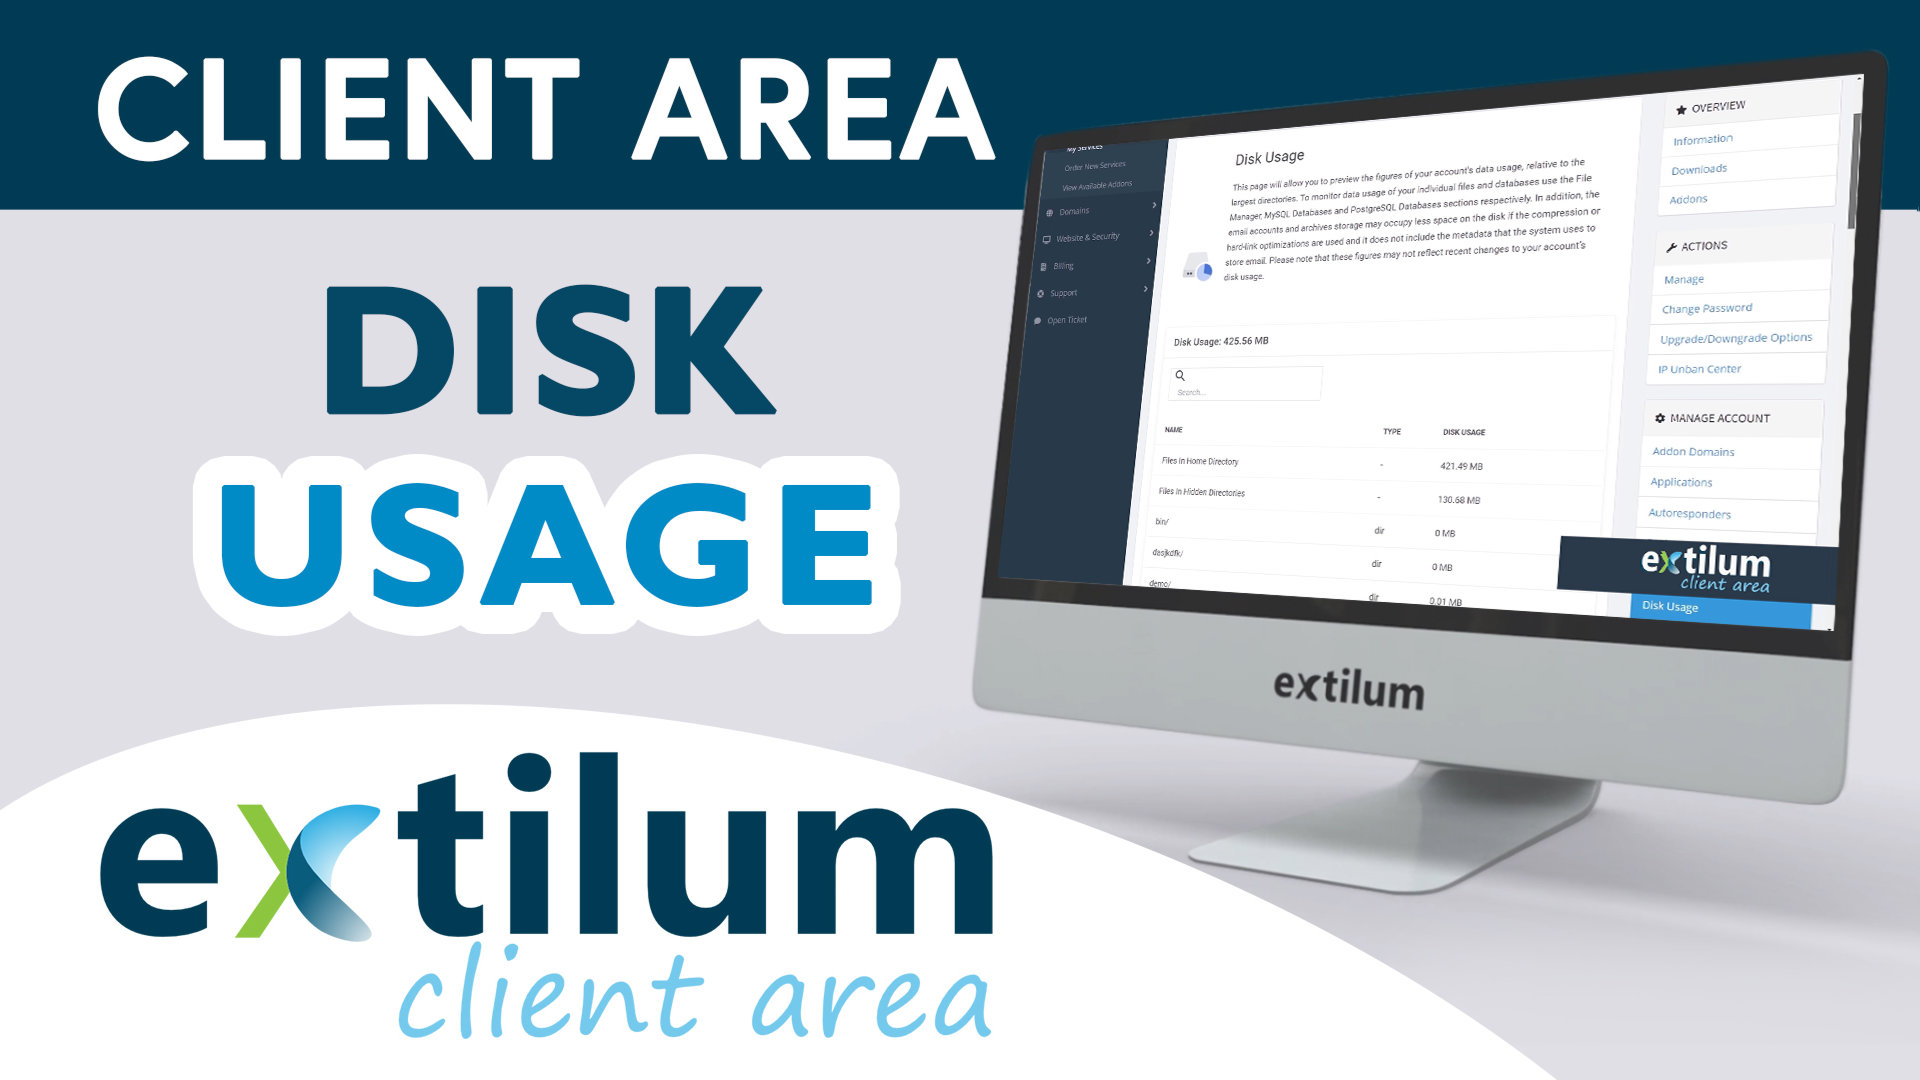 Extilum Client Area - Disk Usage